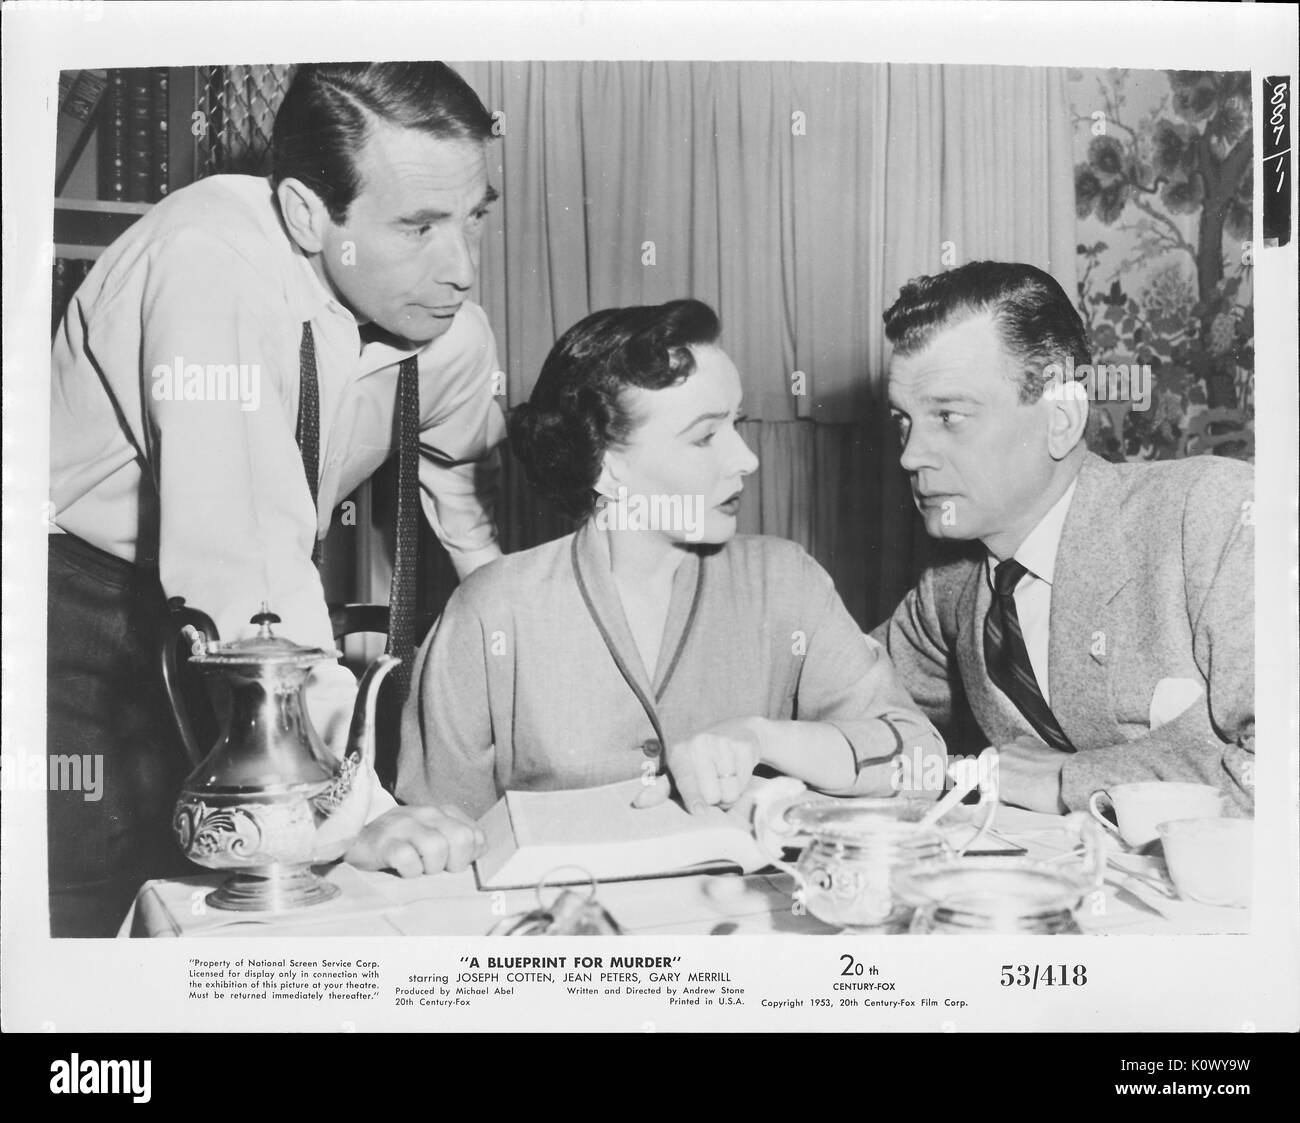 Un film scena ancora da 'un blueprint per omicidio" (1953 XX Century Fox Film thriller), che mostra una donna seduta ricordando qualcosa in un libro all'uomo sulla sua sinistra mentre l'altro uomo sulla sua destra ascolta, 1953. Foto Stock